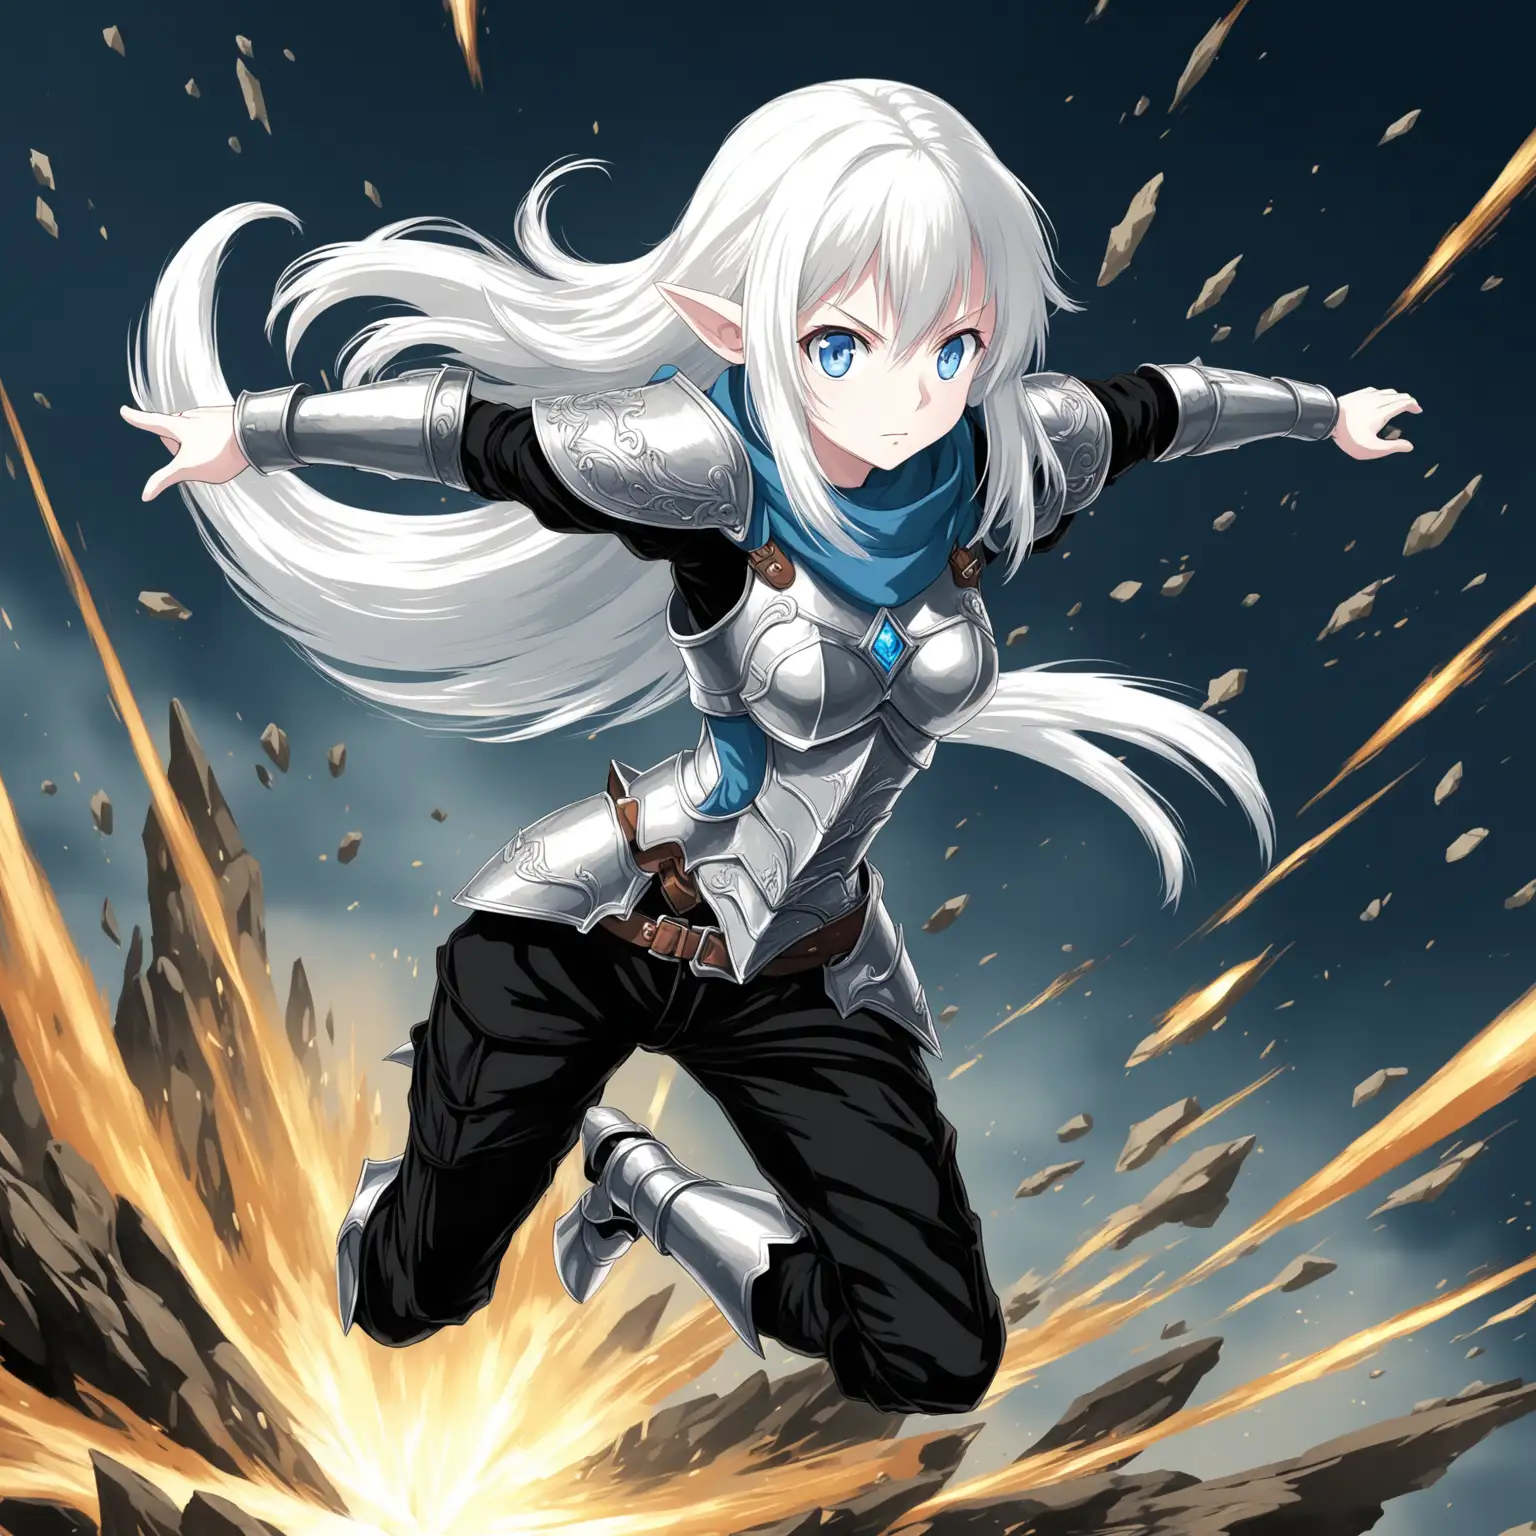 Anime girl, blue eyes, long white hair, short pointed ears, adventurer's armor, black pants,  dynamic pose